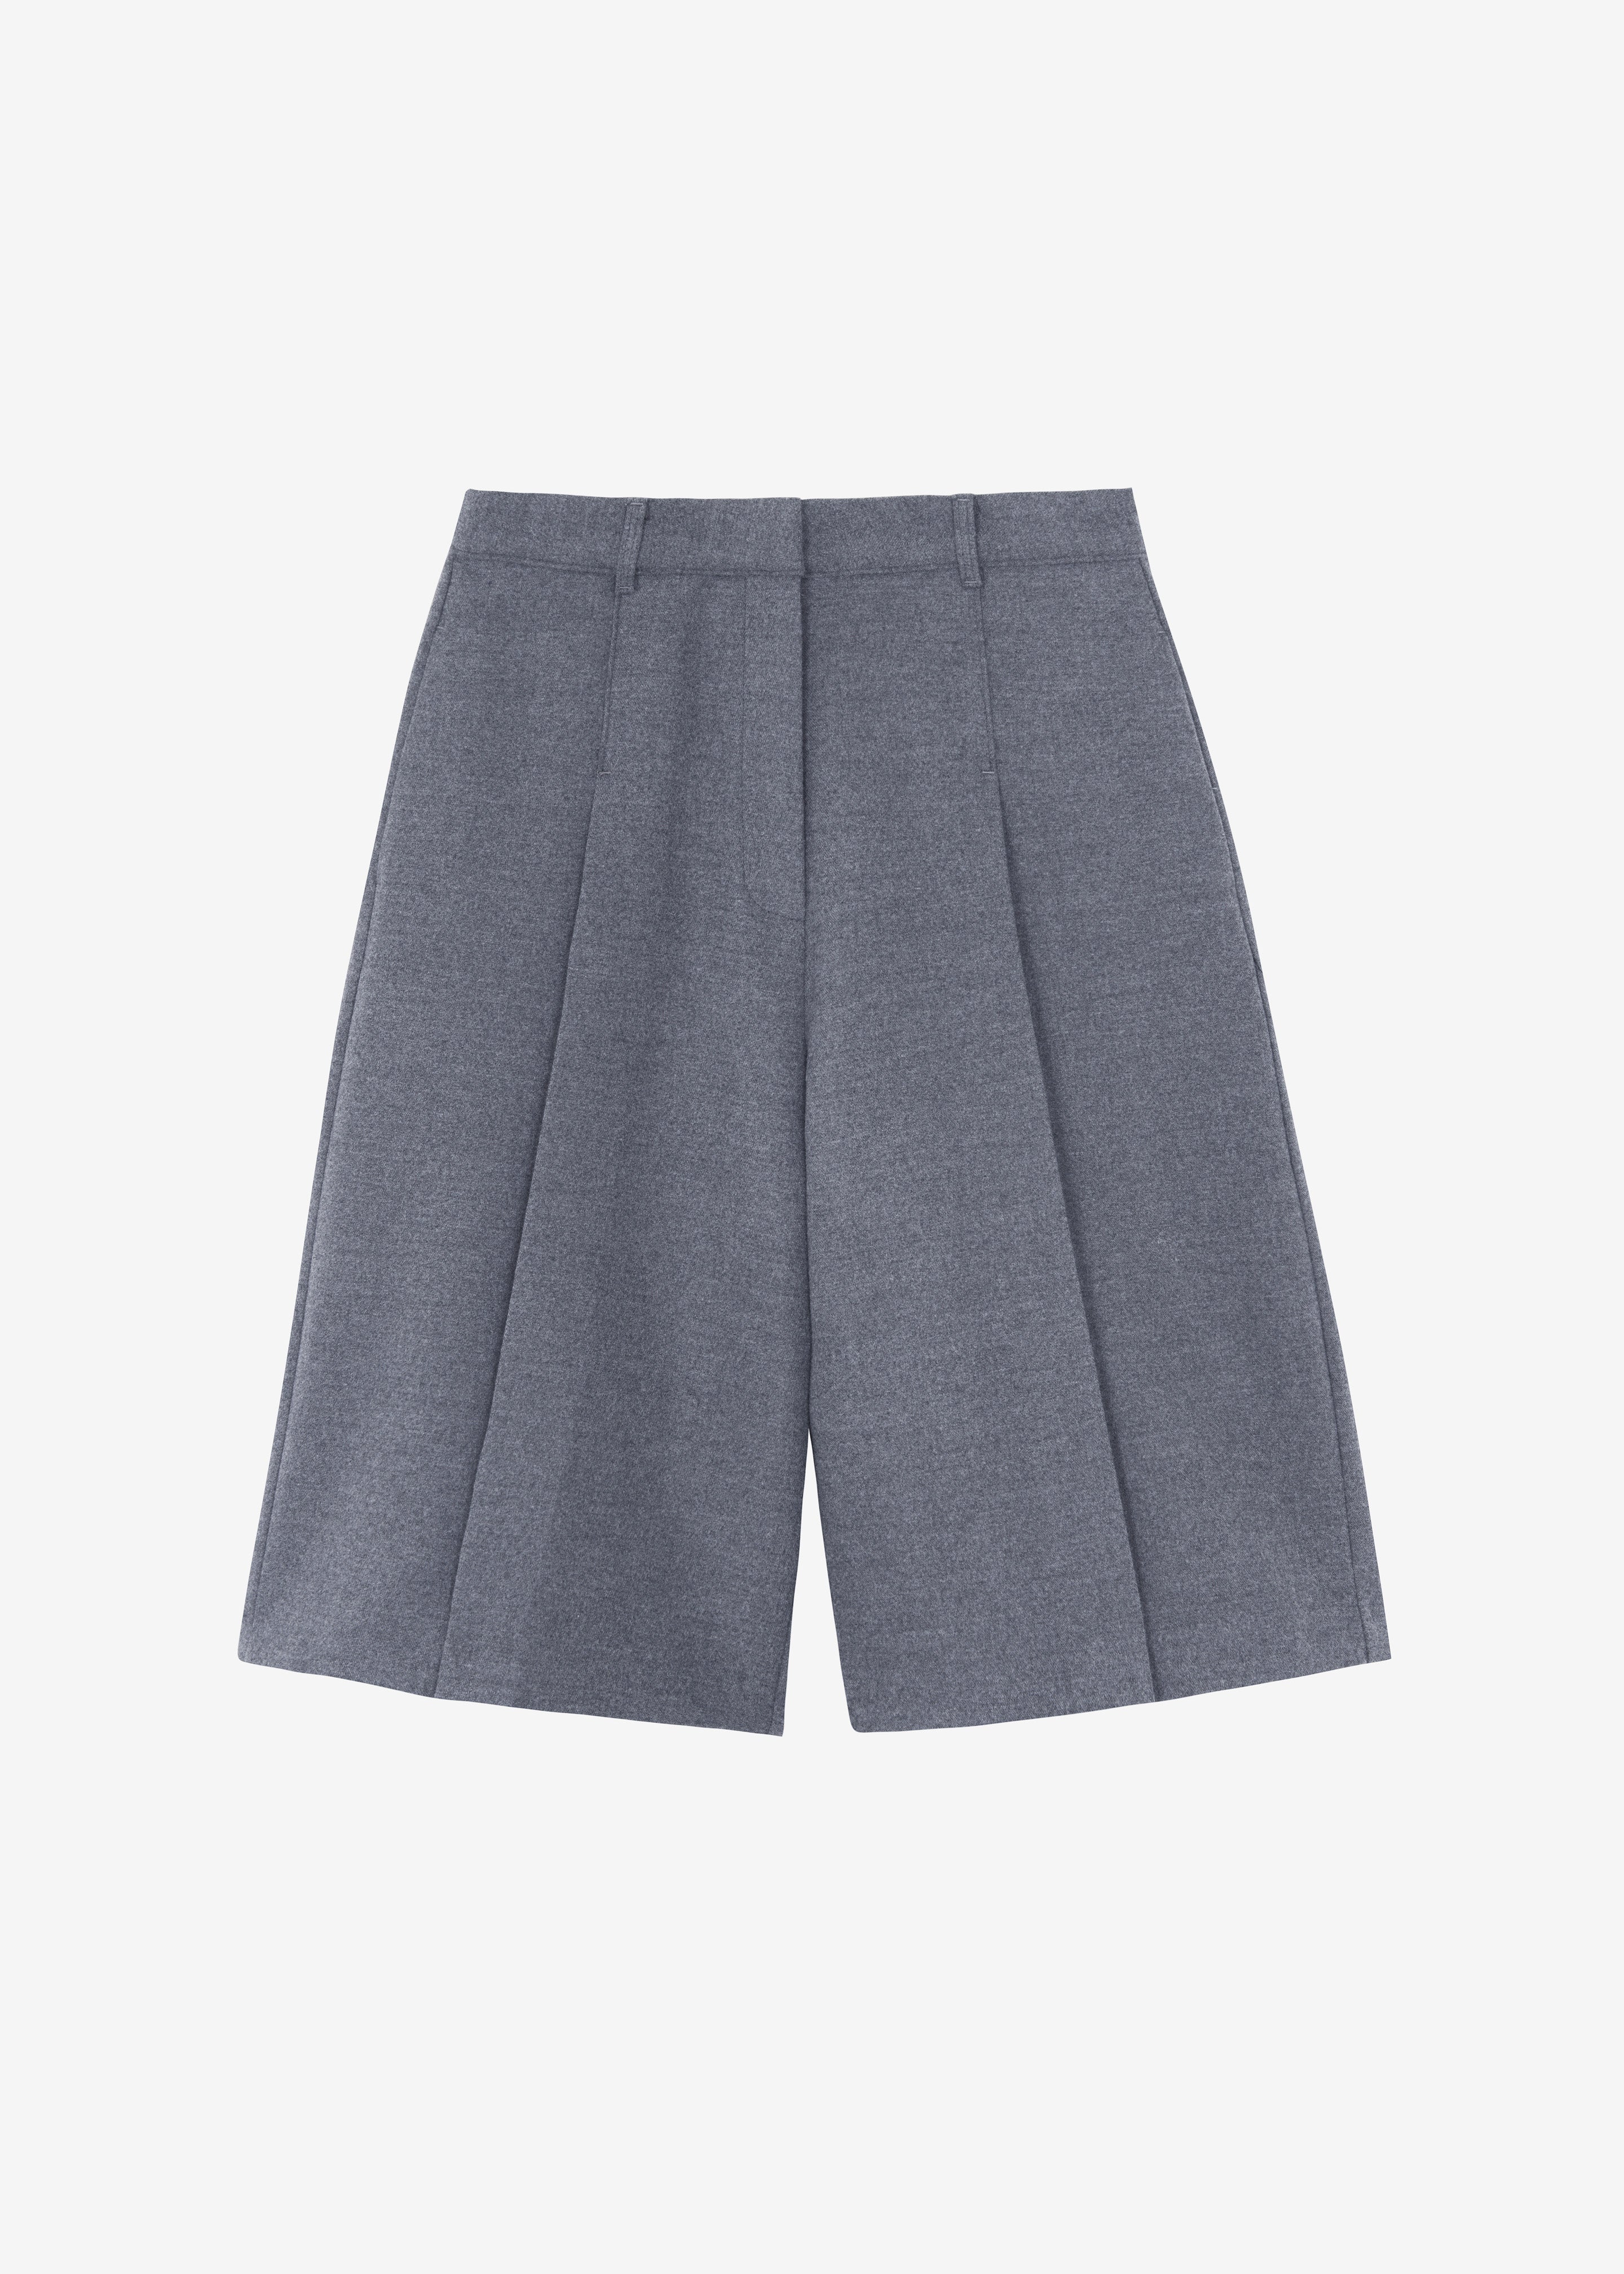 Austen Bermuda Shorts - Grey - 11